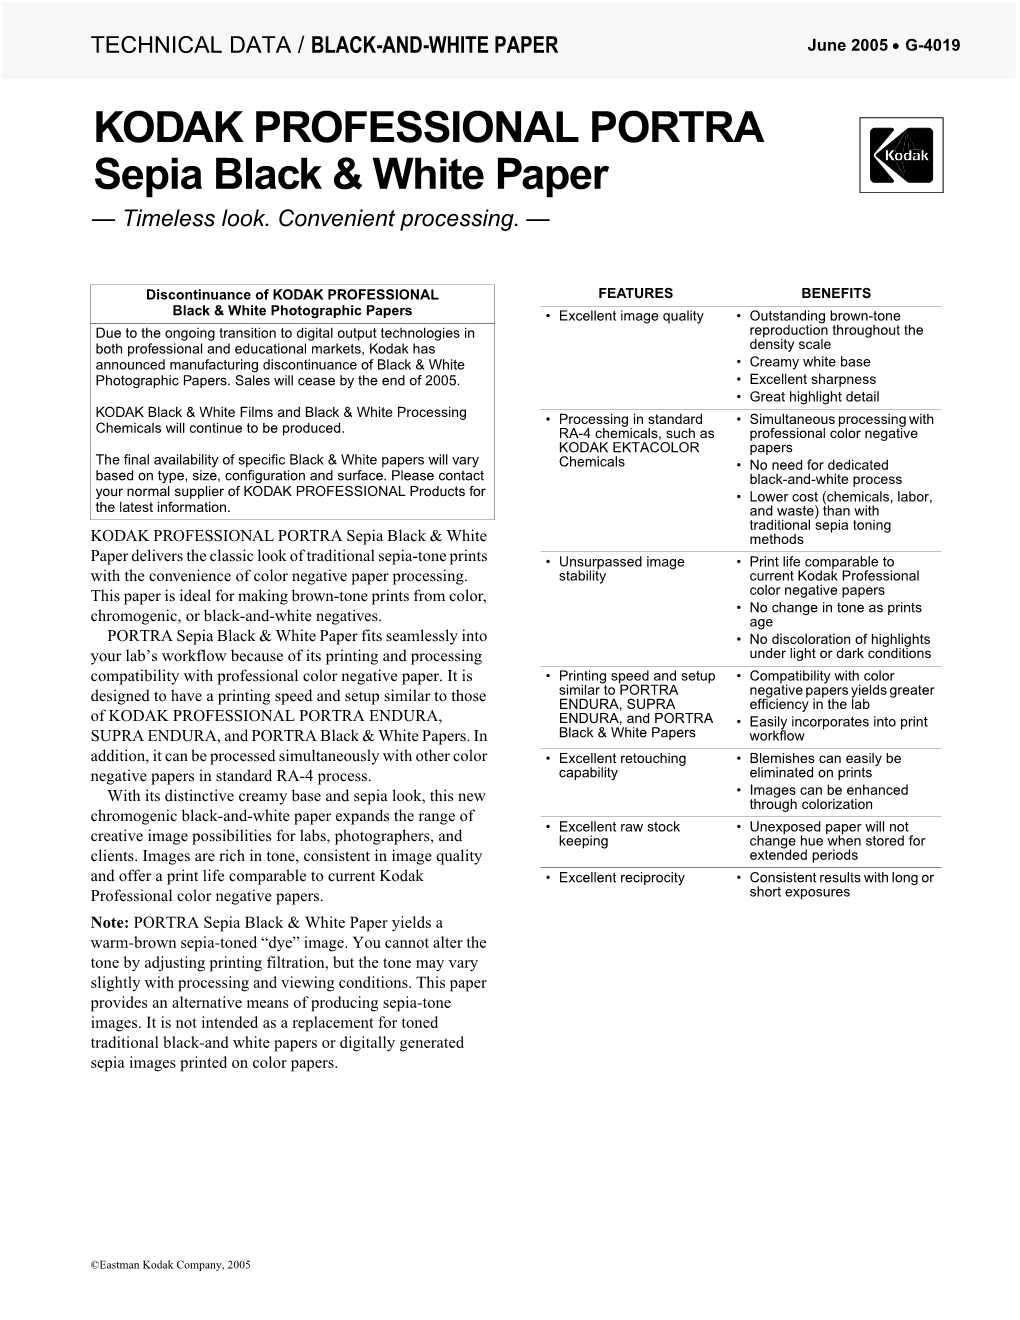 KODAK PROFESSIONAL PORTRA Sepia Black & White Paper